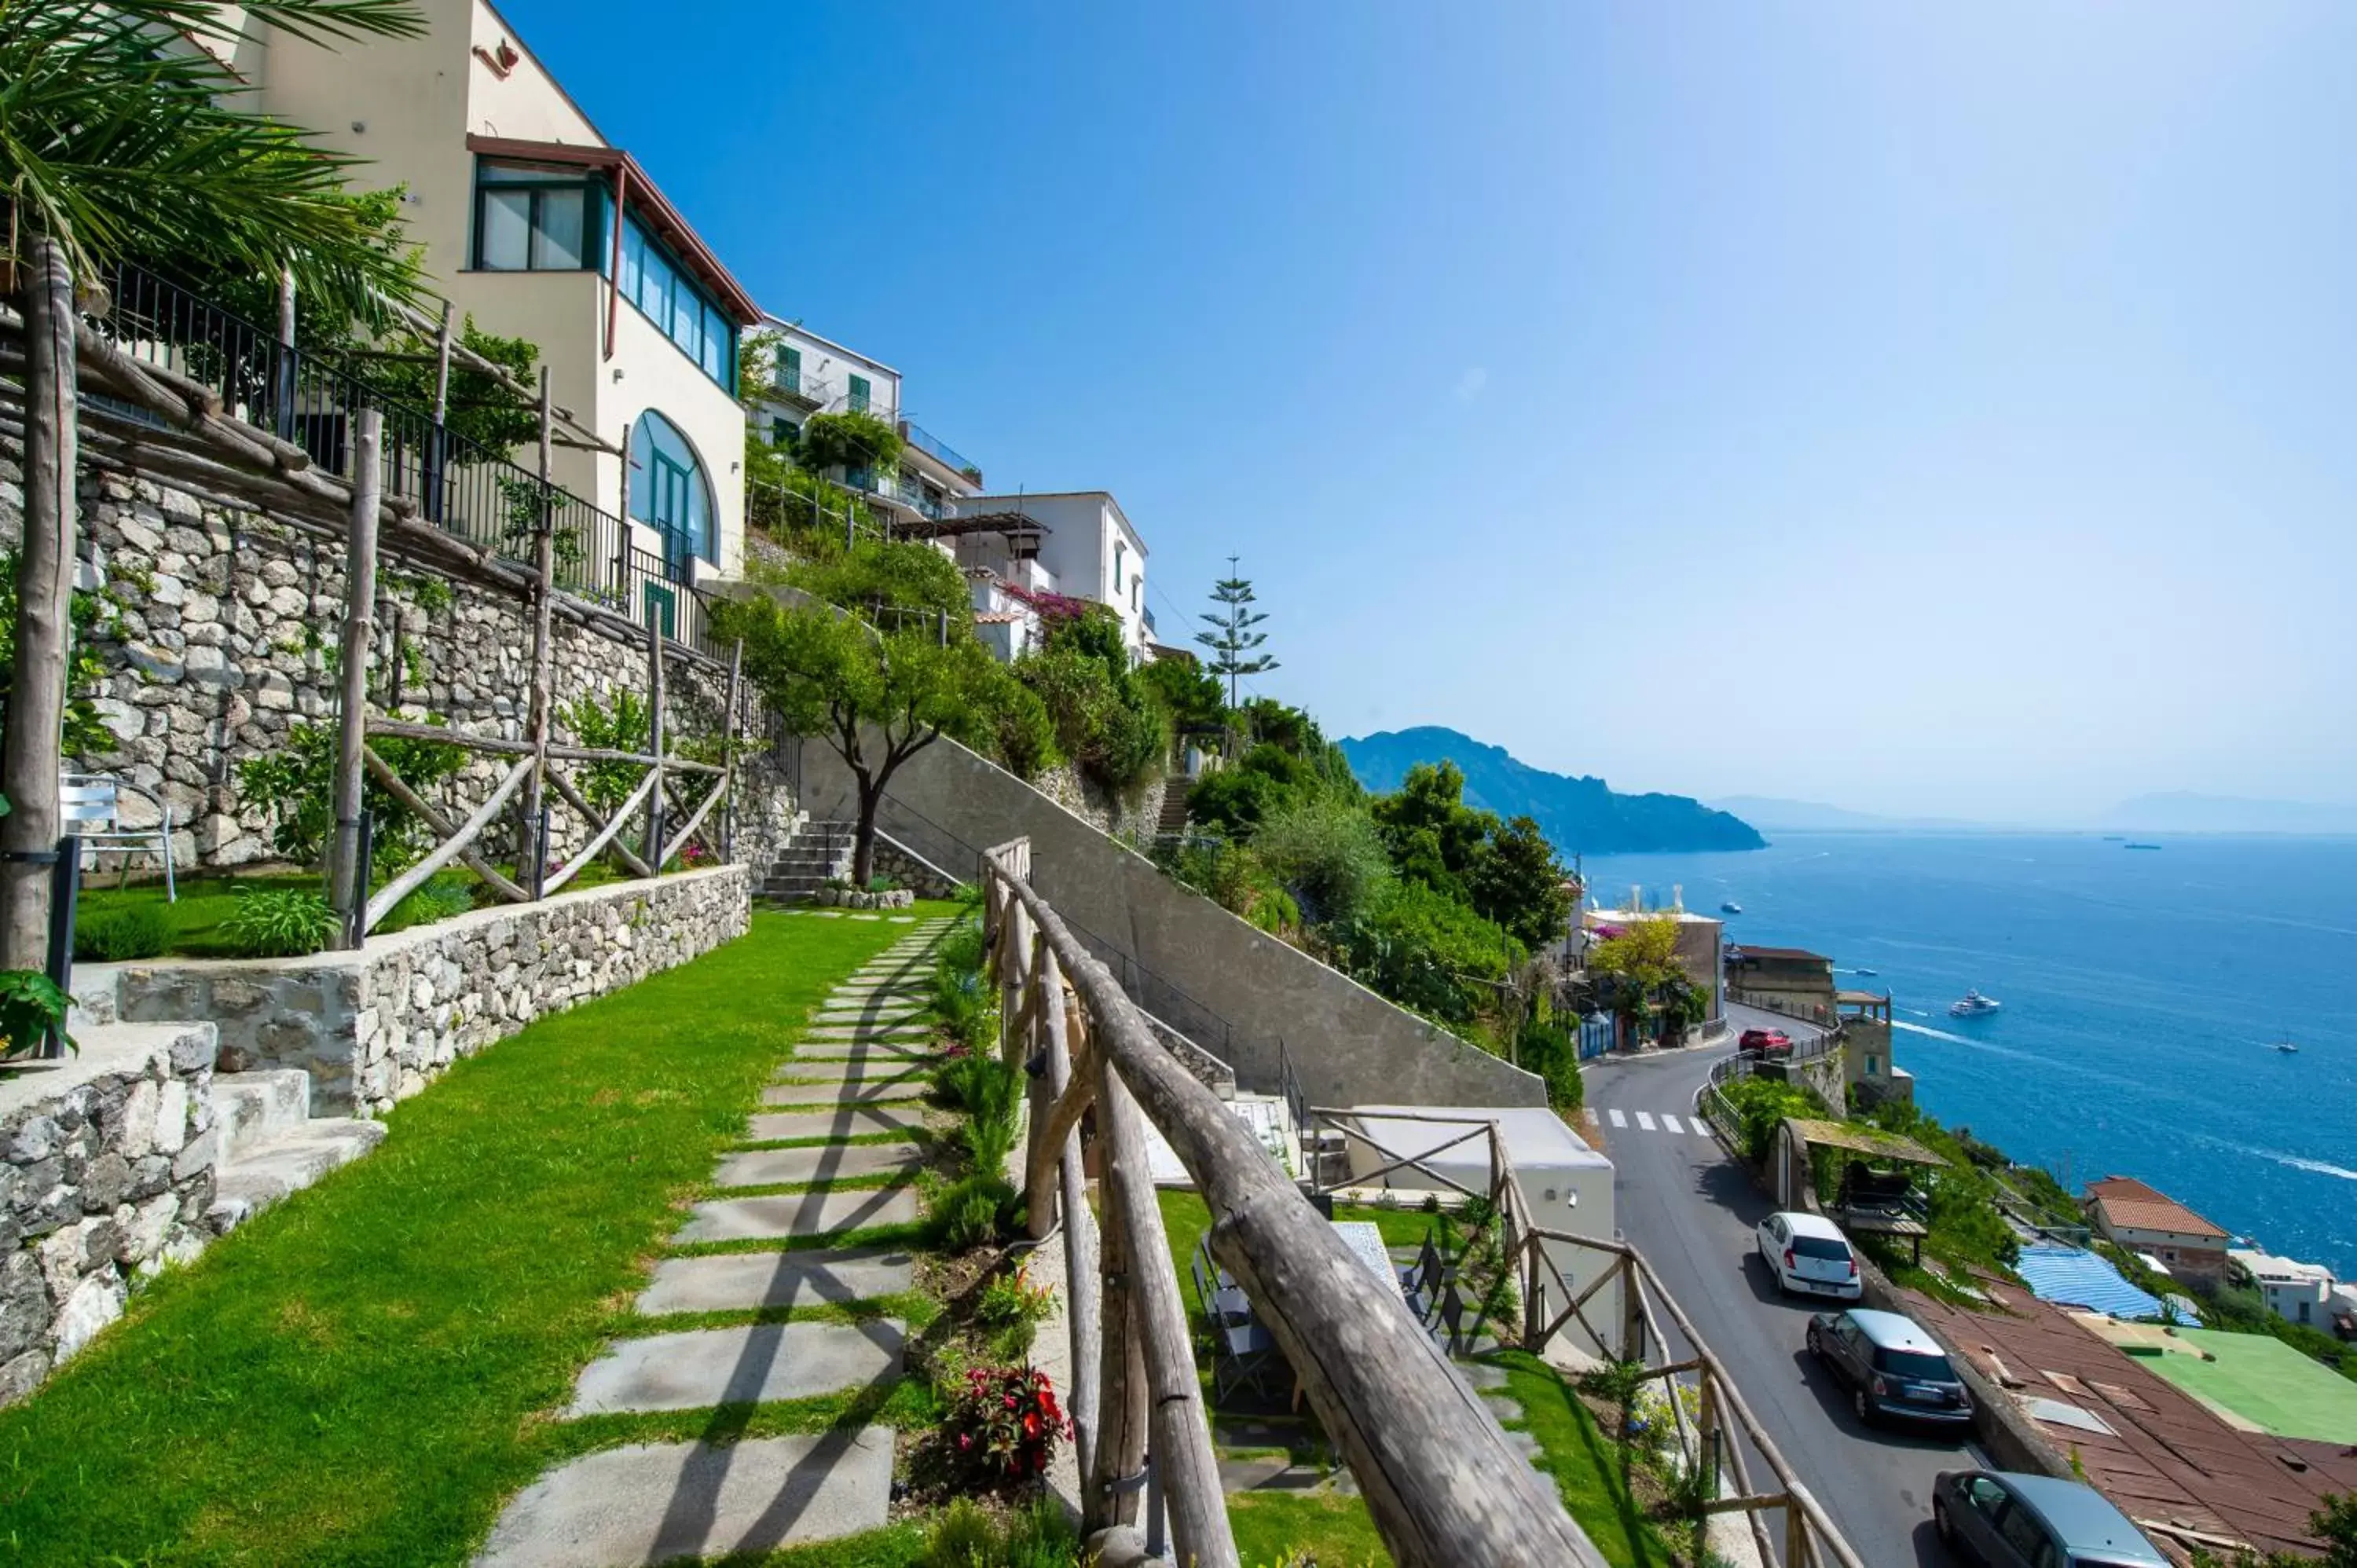 Sea view in Villa Foglia Amalfi